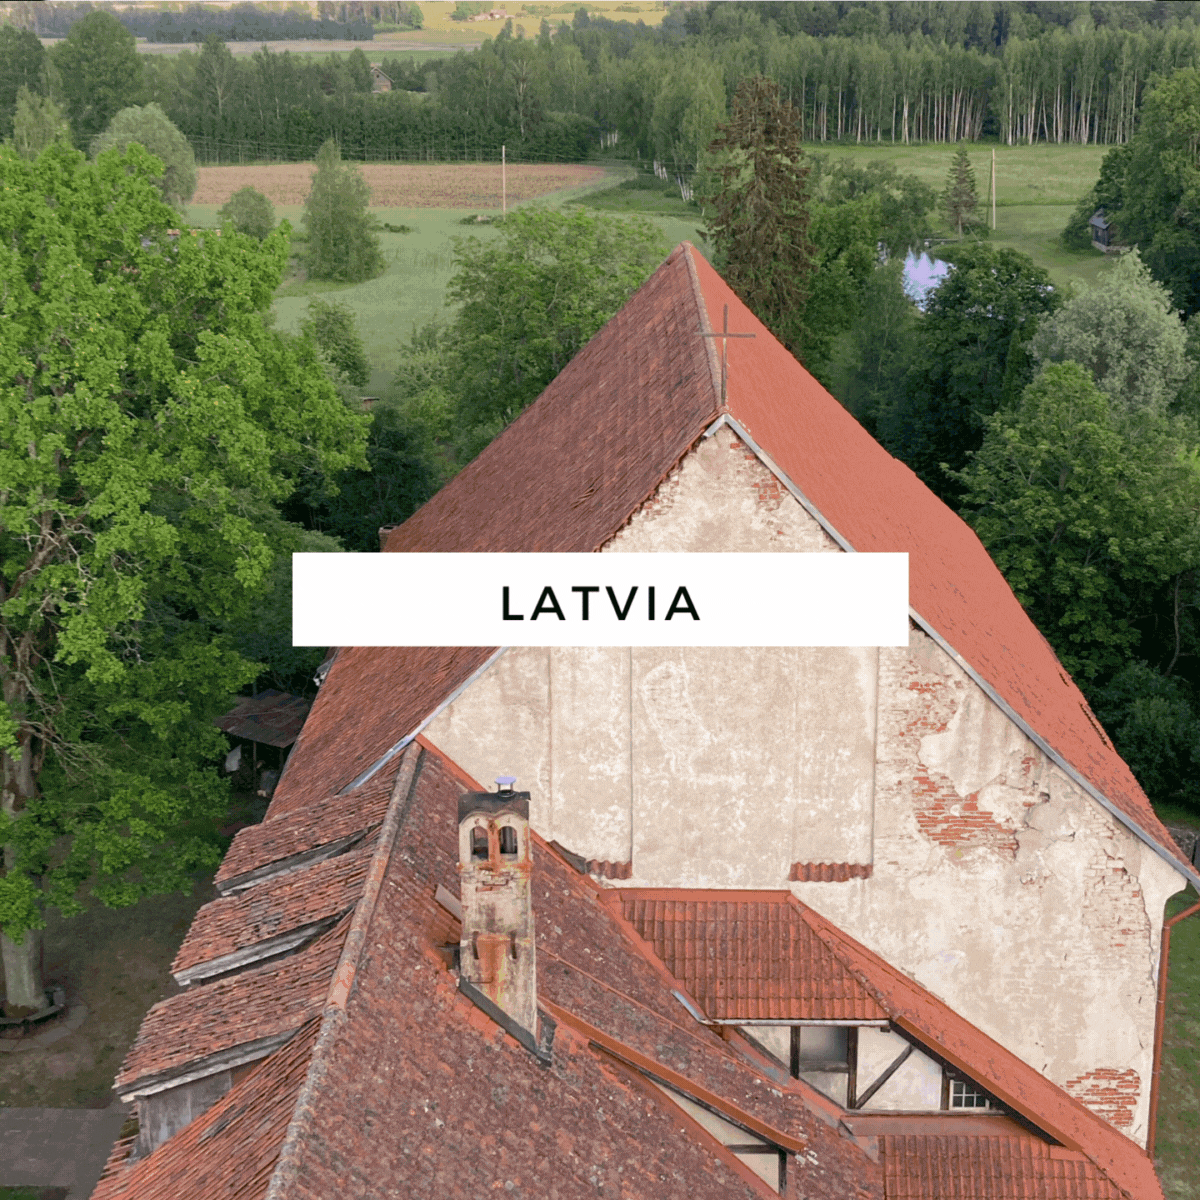 Latvia_HEYDT.